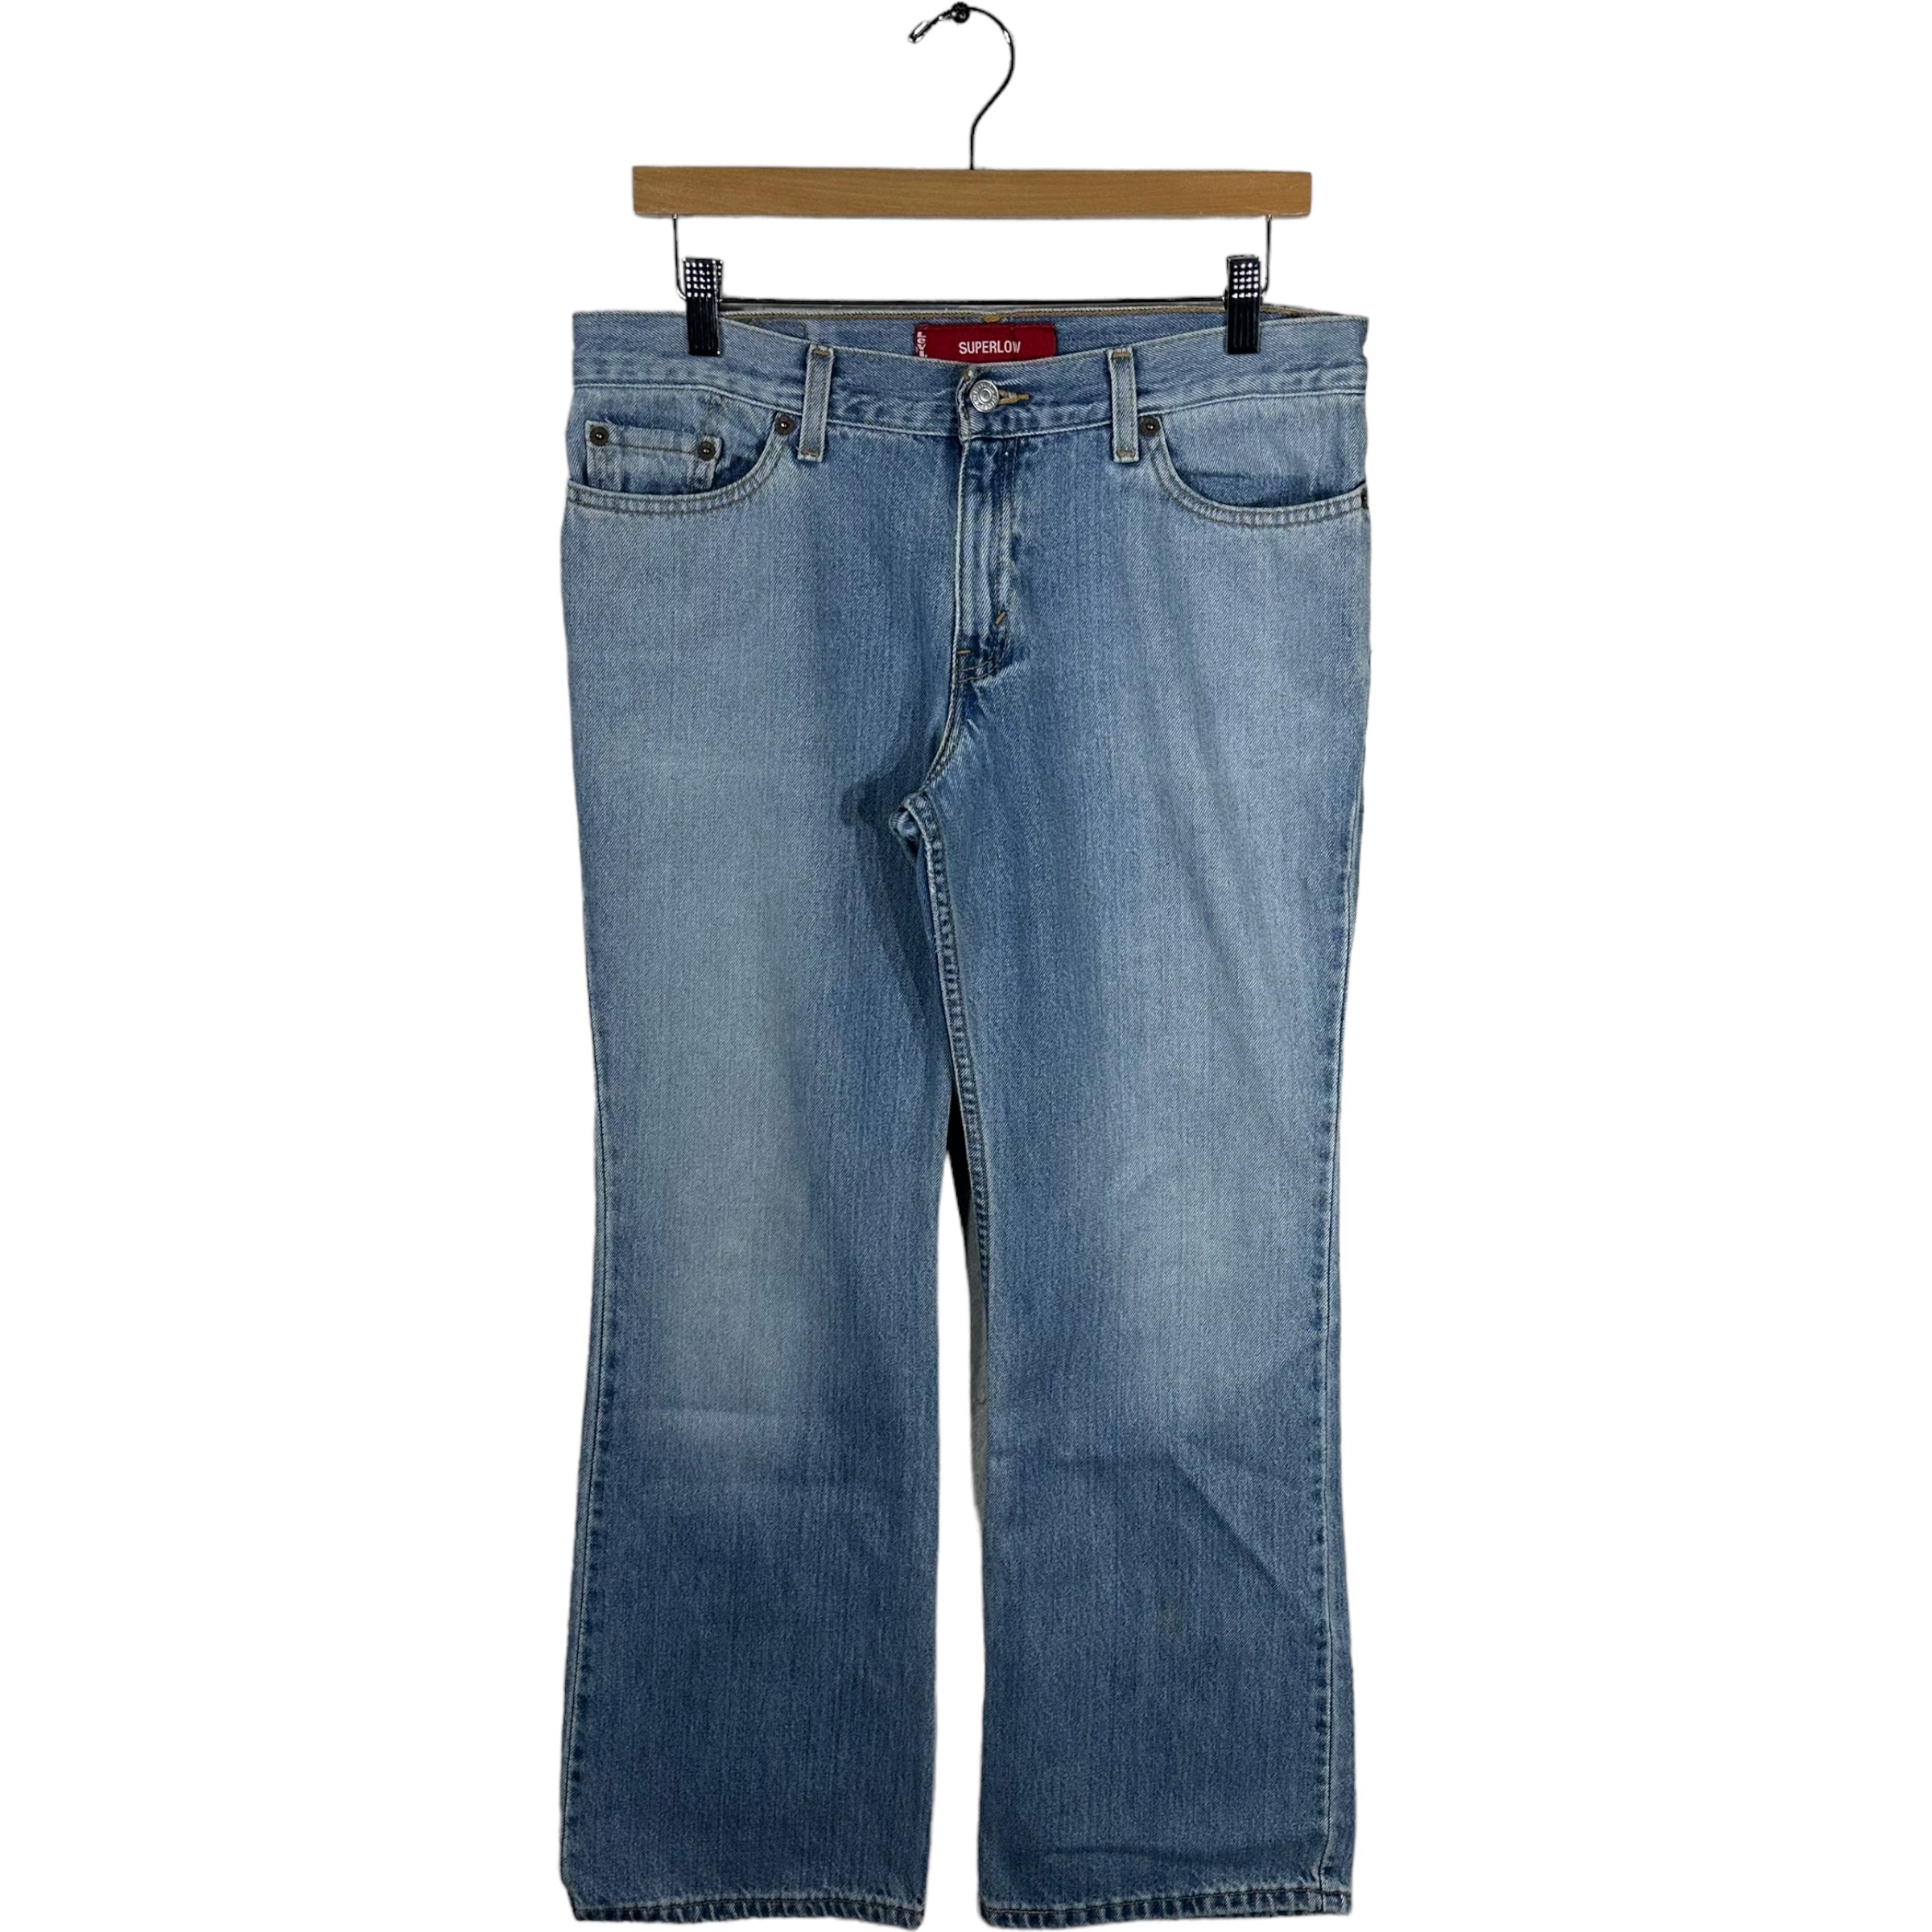 Vintage Levis 518 Denim Jeans